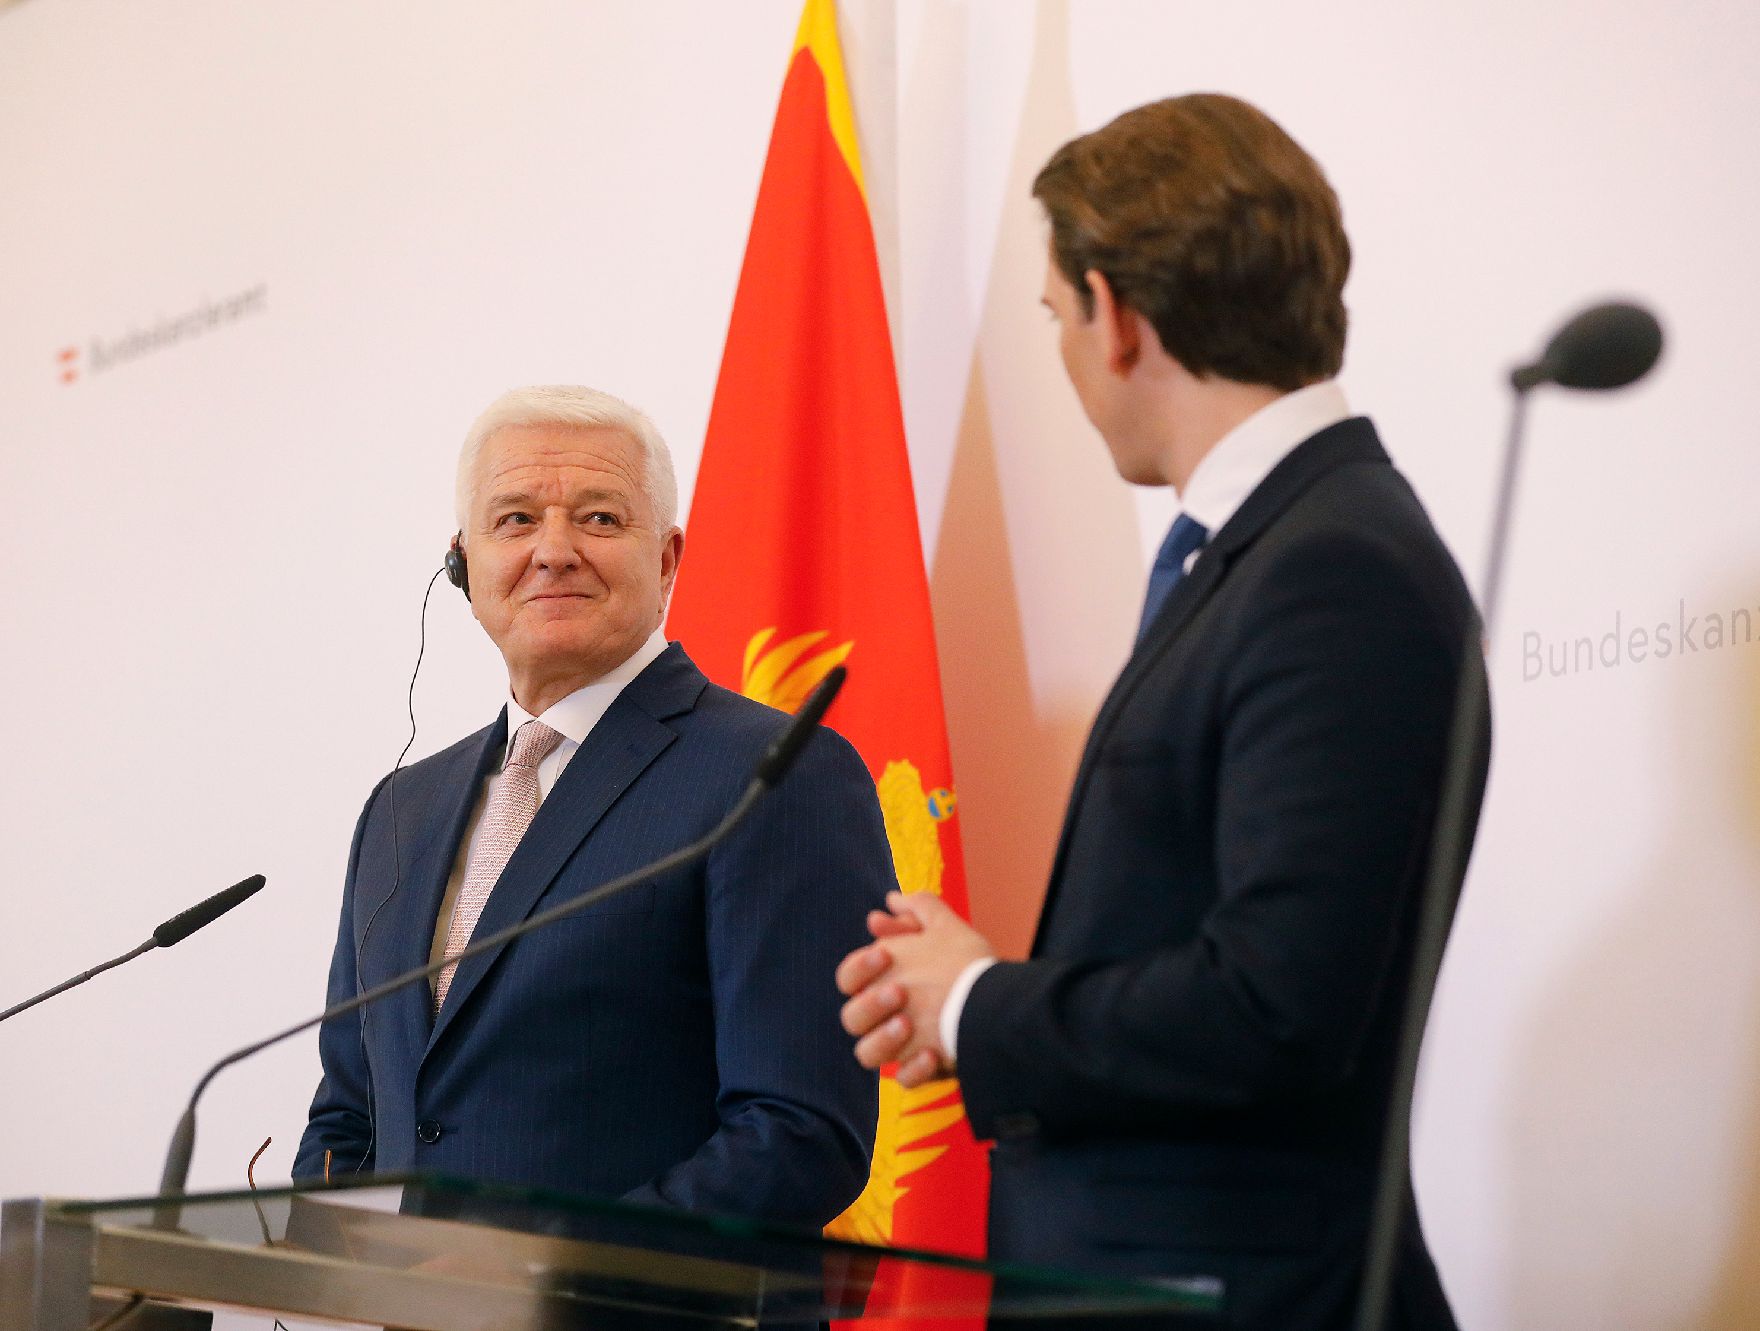 Am 09. April 2019 empfing Bundeskanzler Sebastian Kurz (r.) den Premierminister von Montenegro Duško Marković (l.) mit militärischen Ehren. Im Bild bei der Pressekonferenz.